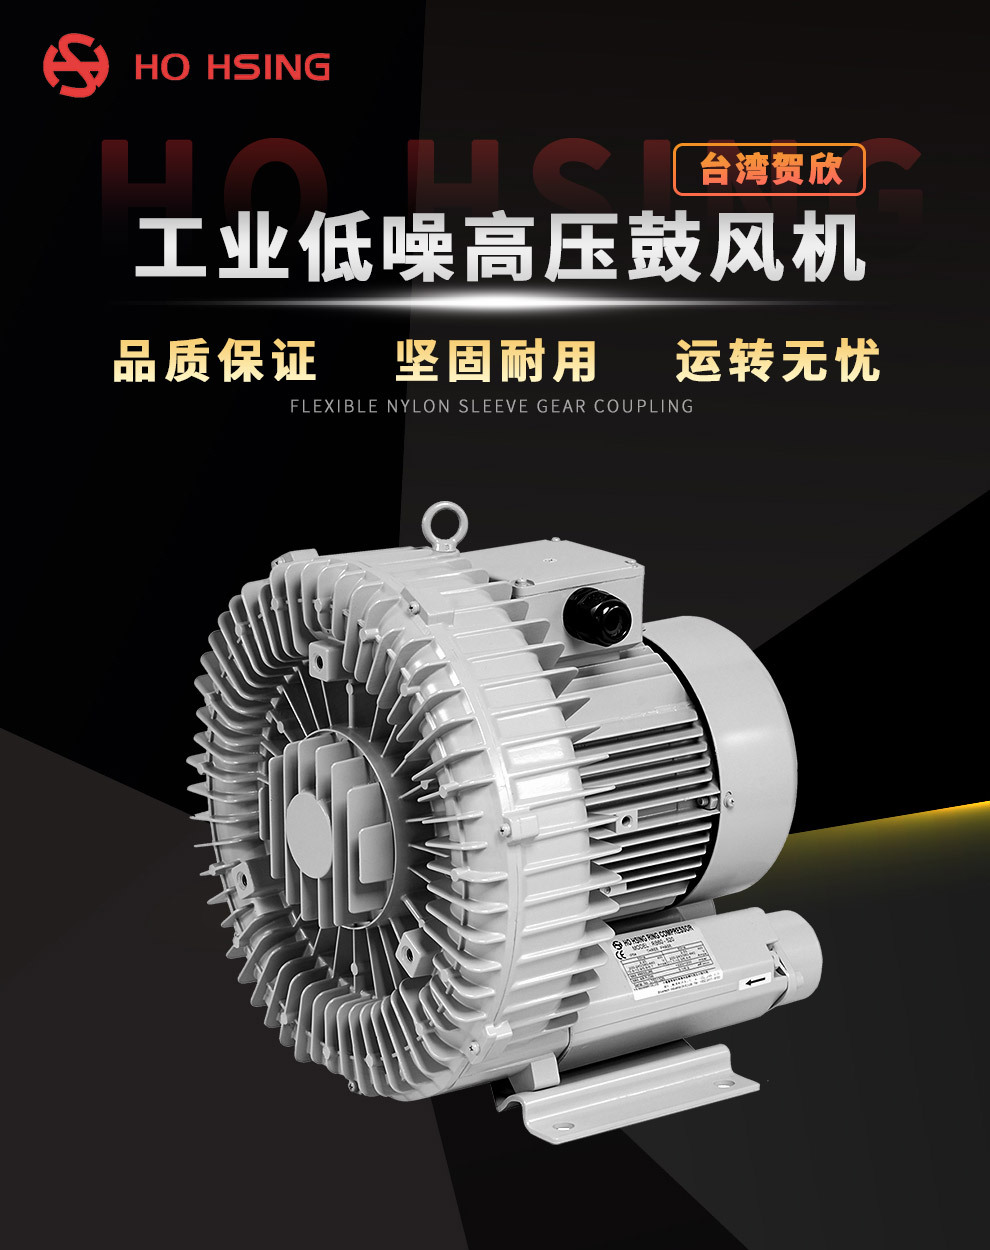 Ho Hsing 小型工业通用 RB40-610 粉尘过滤 台湾轻量化高压鼓风机示例图1